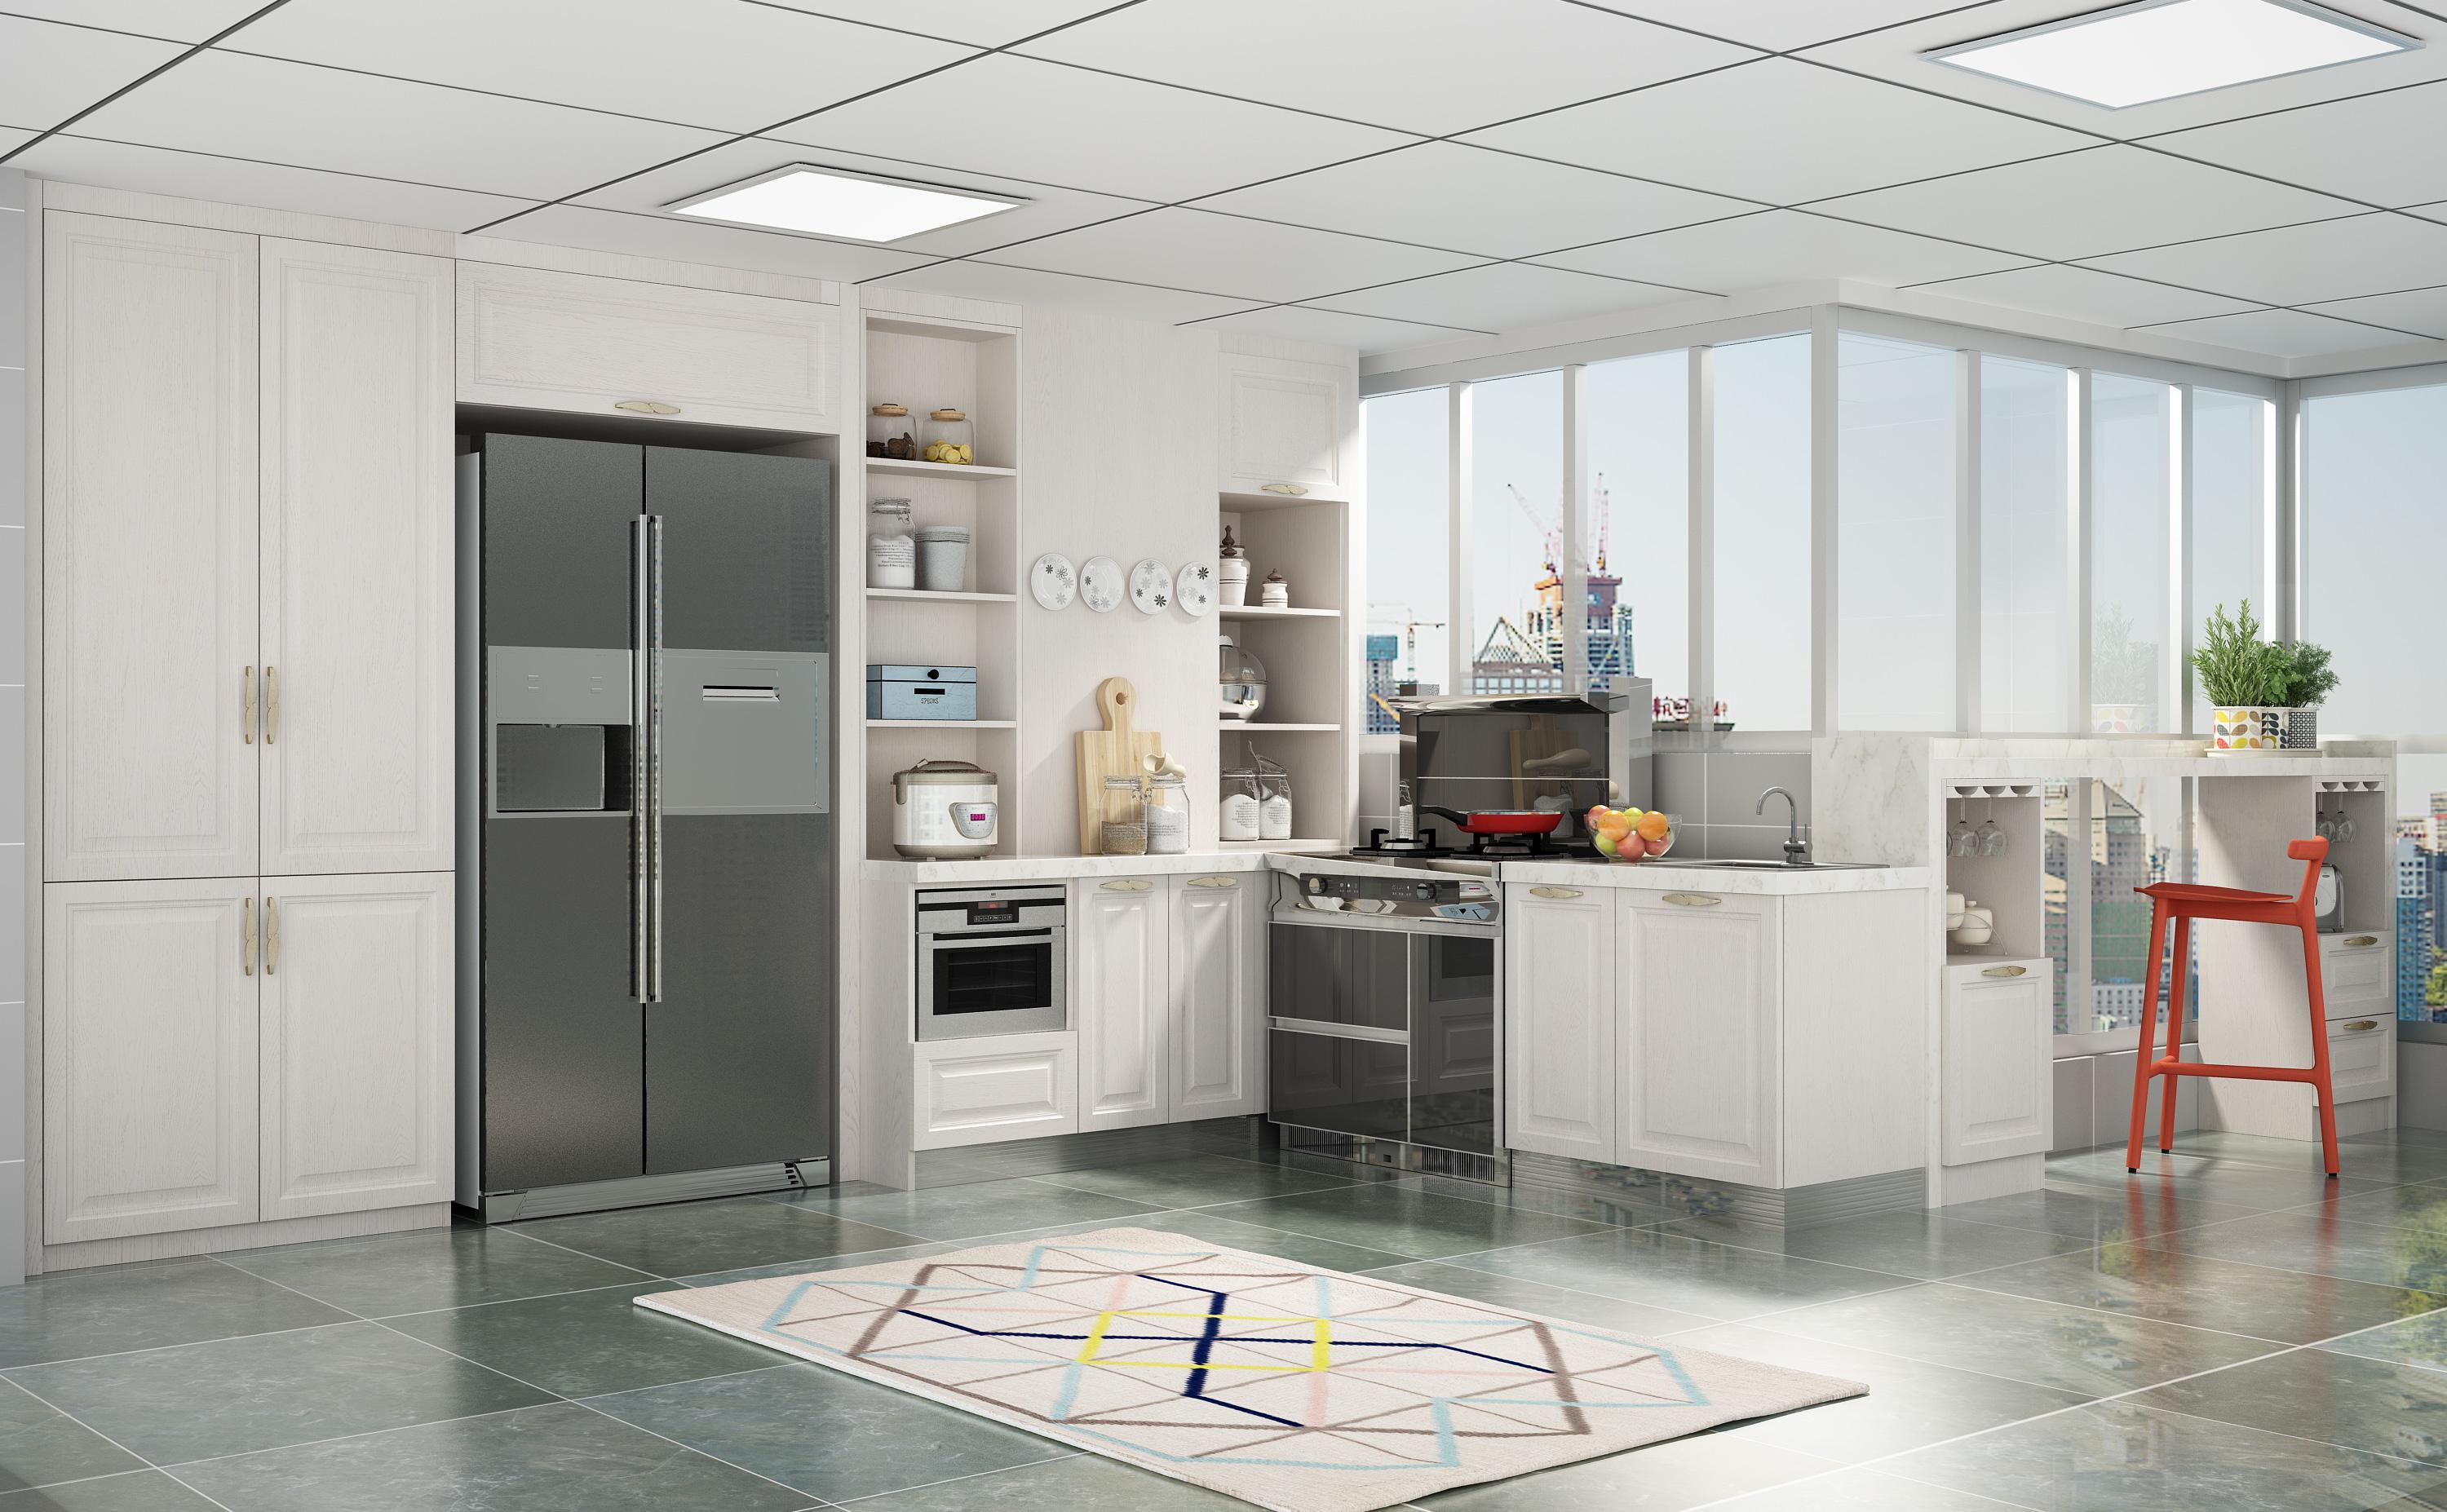 现代简欧风格开放式整体厨房装修效果图